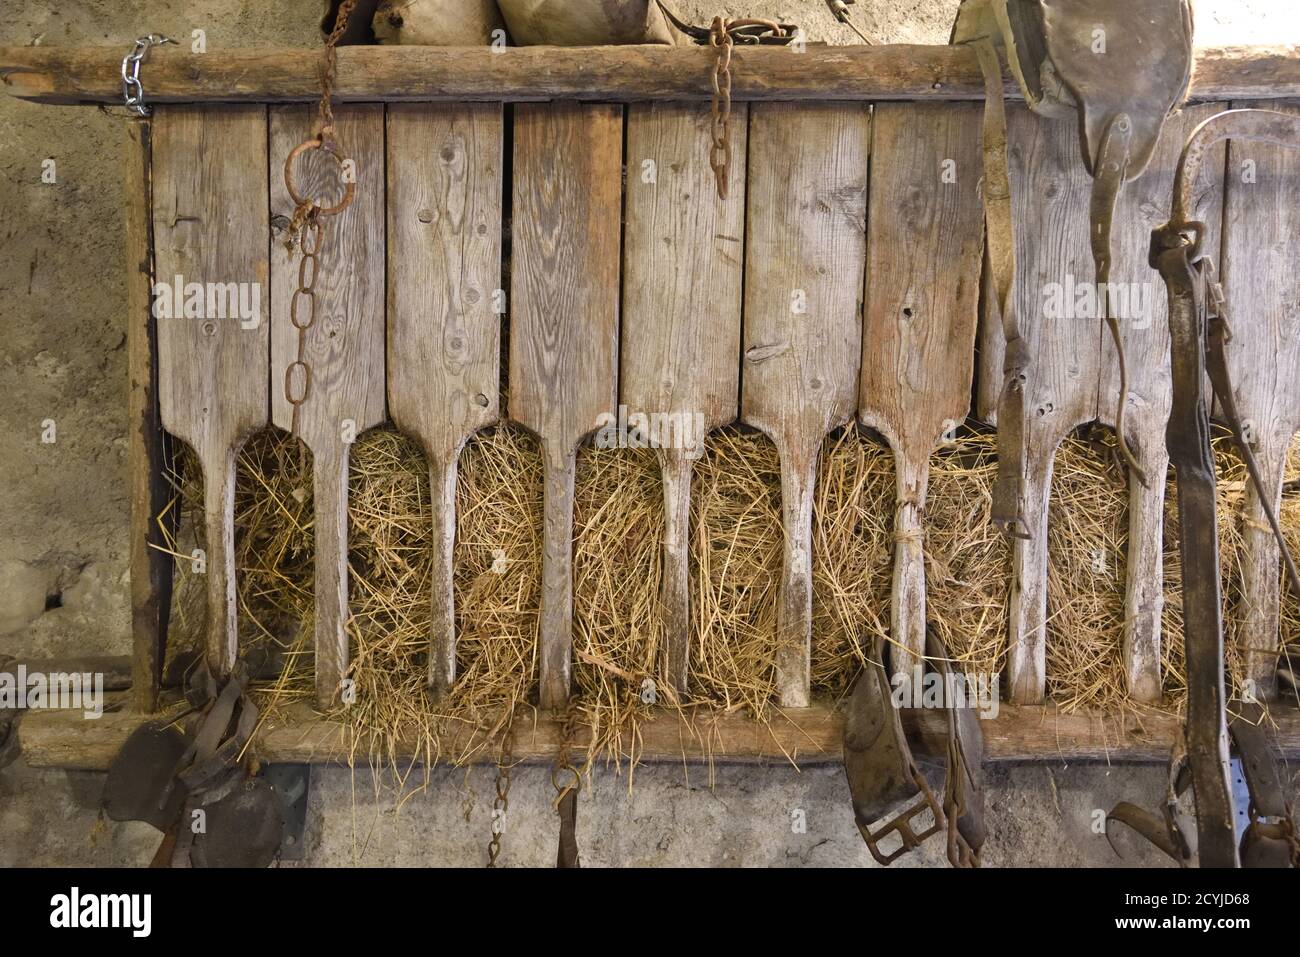 Ancien fourrageur de foin en bois ou bac dans Old Farmhouse, stables, Barn ou Farm Building Provence France Banque D'Images